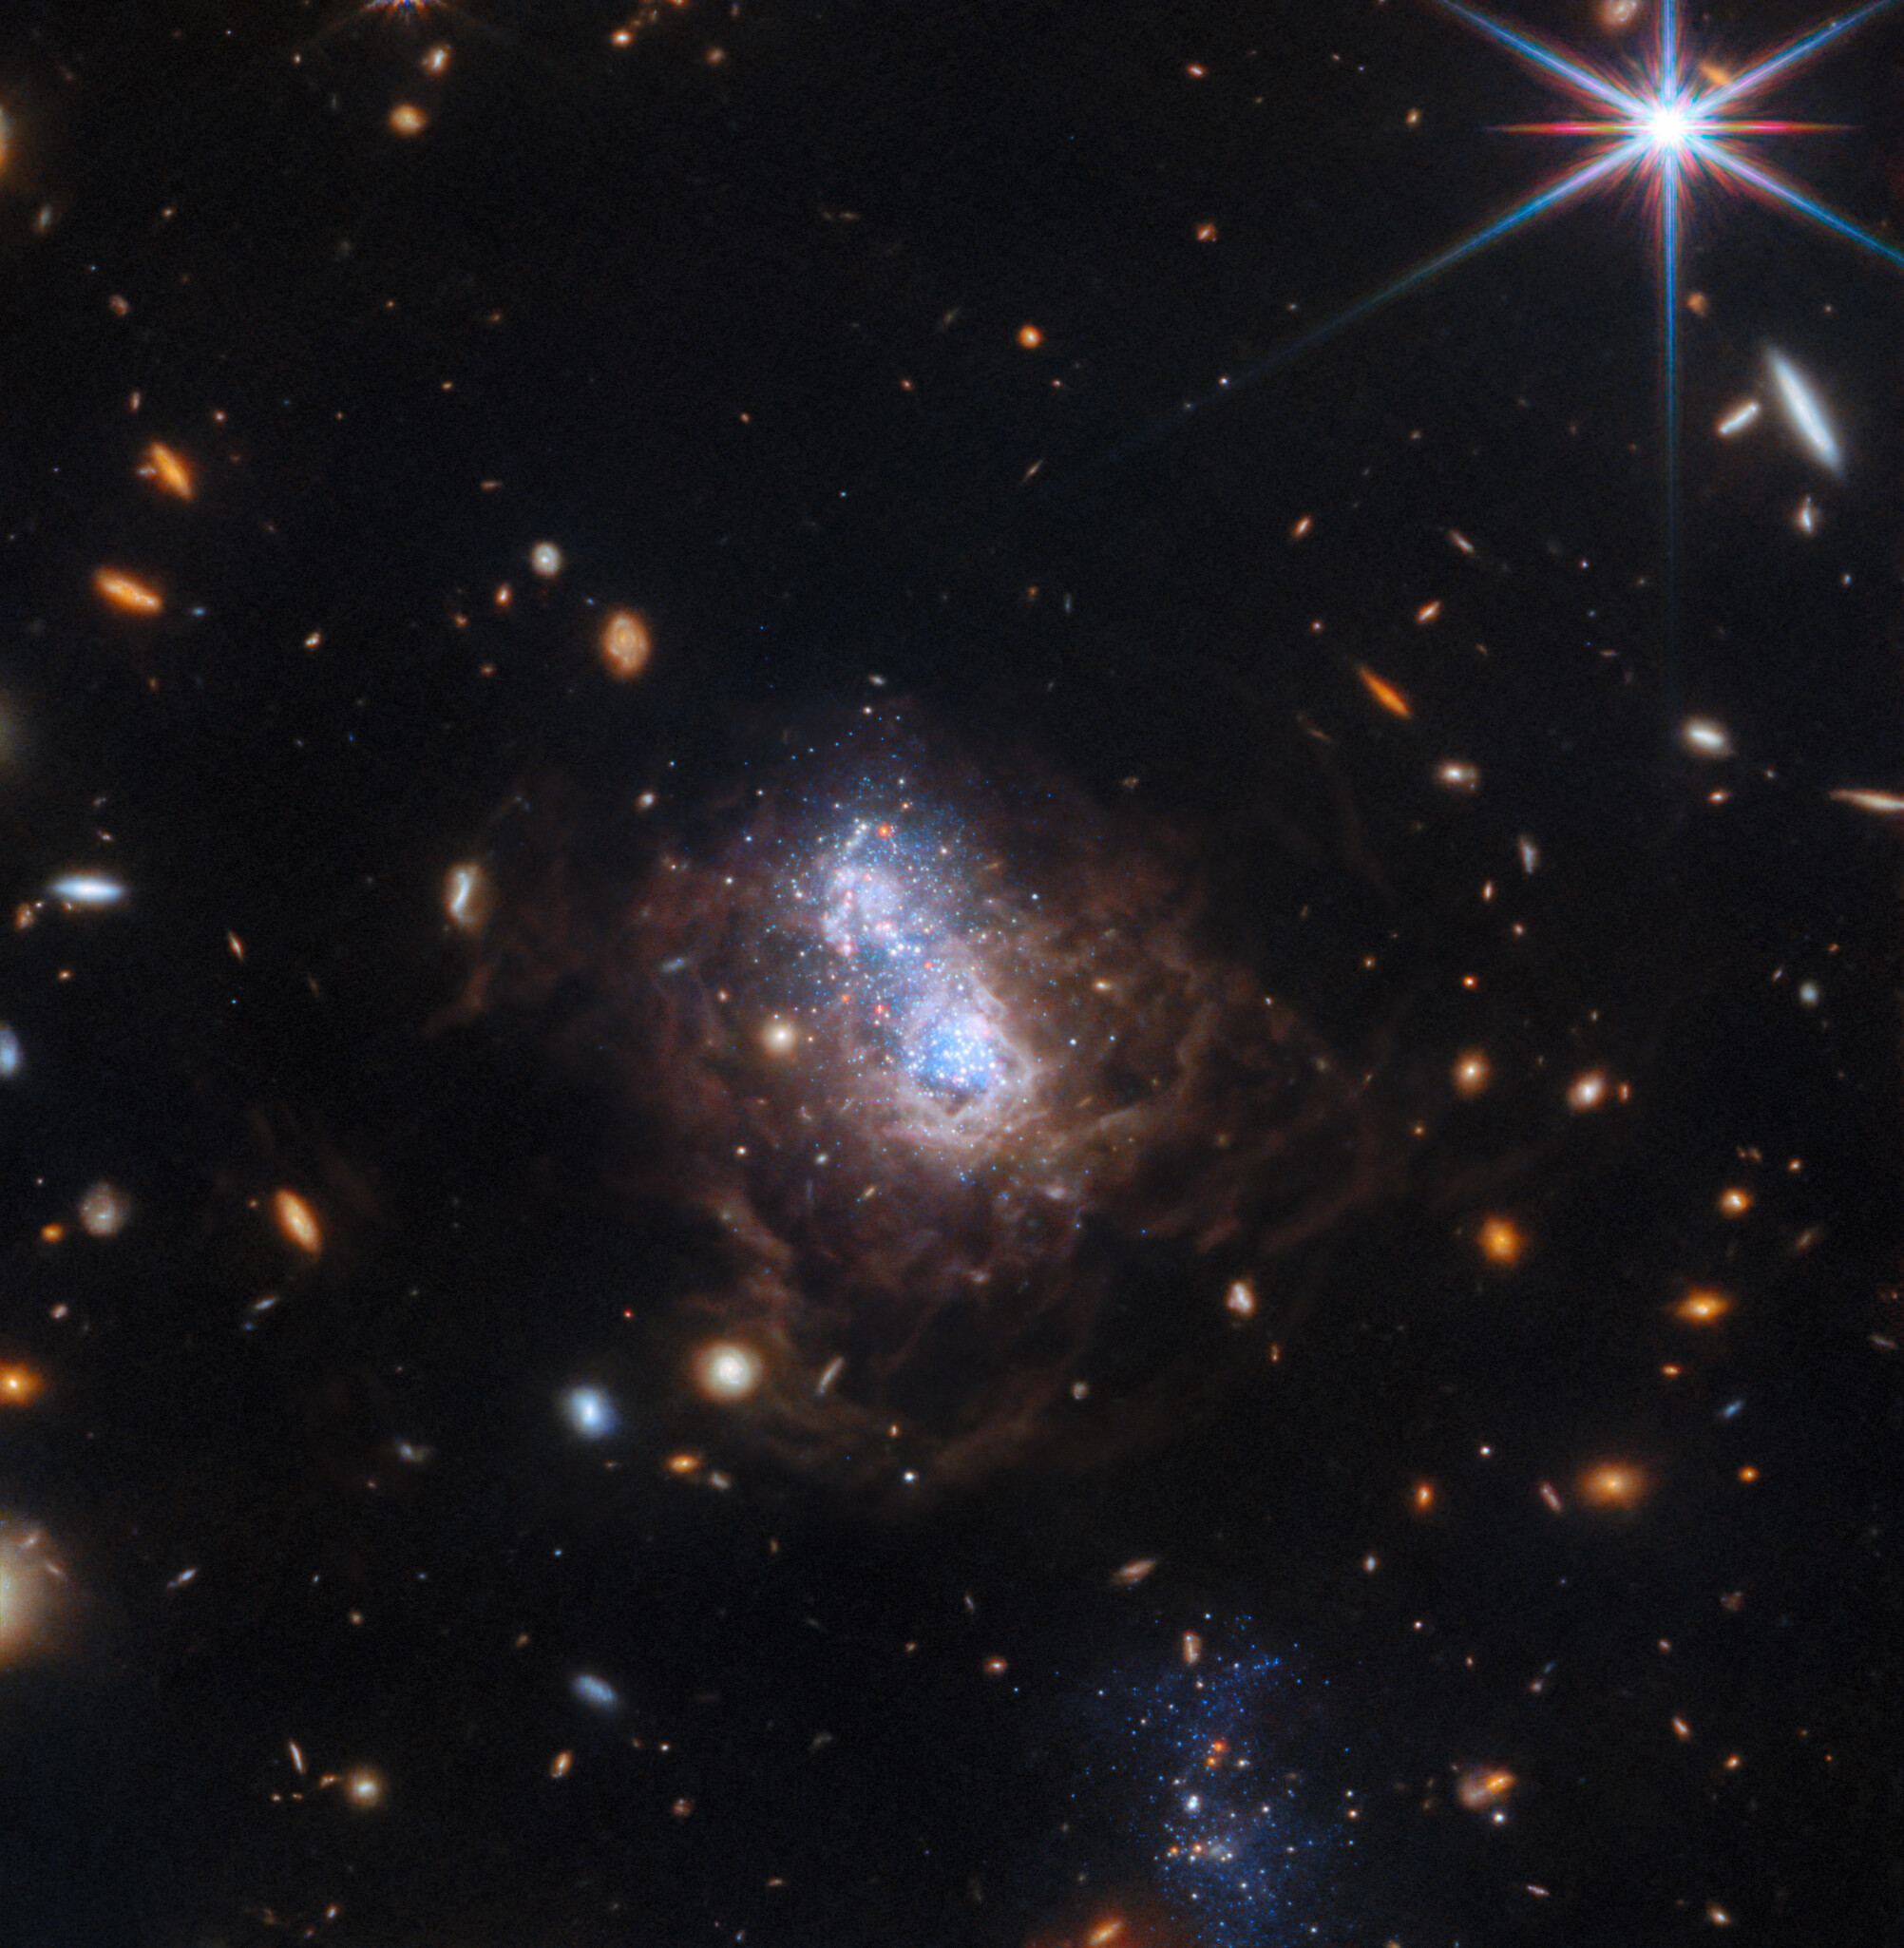 Na ilustracji: W polu widzenia widać wiele małych galaktyk. Najczęściej są to owalne galaktyki spiralne w kolorze białym i czerwonym. Centrum zdjęcia wypełnia nieregularna galaktyka karłowata I Zwicky 18 (I Zw 18) z jasnym obszarem wypełnionym gwiazdami w kolorze białym i niebieskim. Jądro galaktyki rozdziela się na dwa płaty. Obszar centralny I Zw 18 jest otoczony przez włókna pyłowe w kolorze brązowym. W dolnej części zdjęcia jest widoczna galaktyka towarzysząca (wygląda jak zbiór niebieskich gwiazd), która najprawdopodobniej oddziałuje z I Zw 18 i mogła w niej zapoczątkować niedawne procesy gwiazdotwórcze.  ESA/Webb, NASA, CSA, A. Hirschauer, M. Meixner et al.